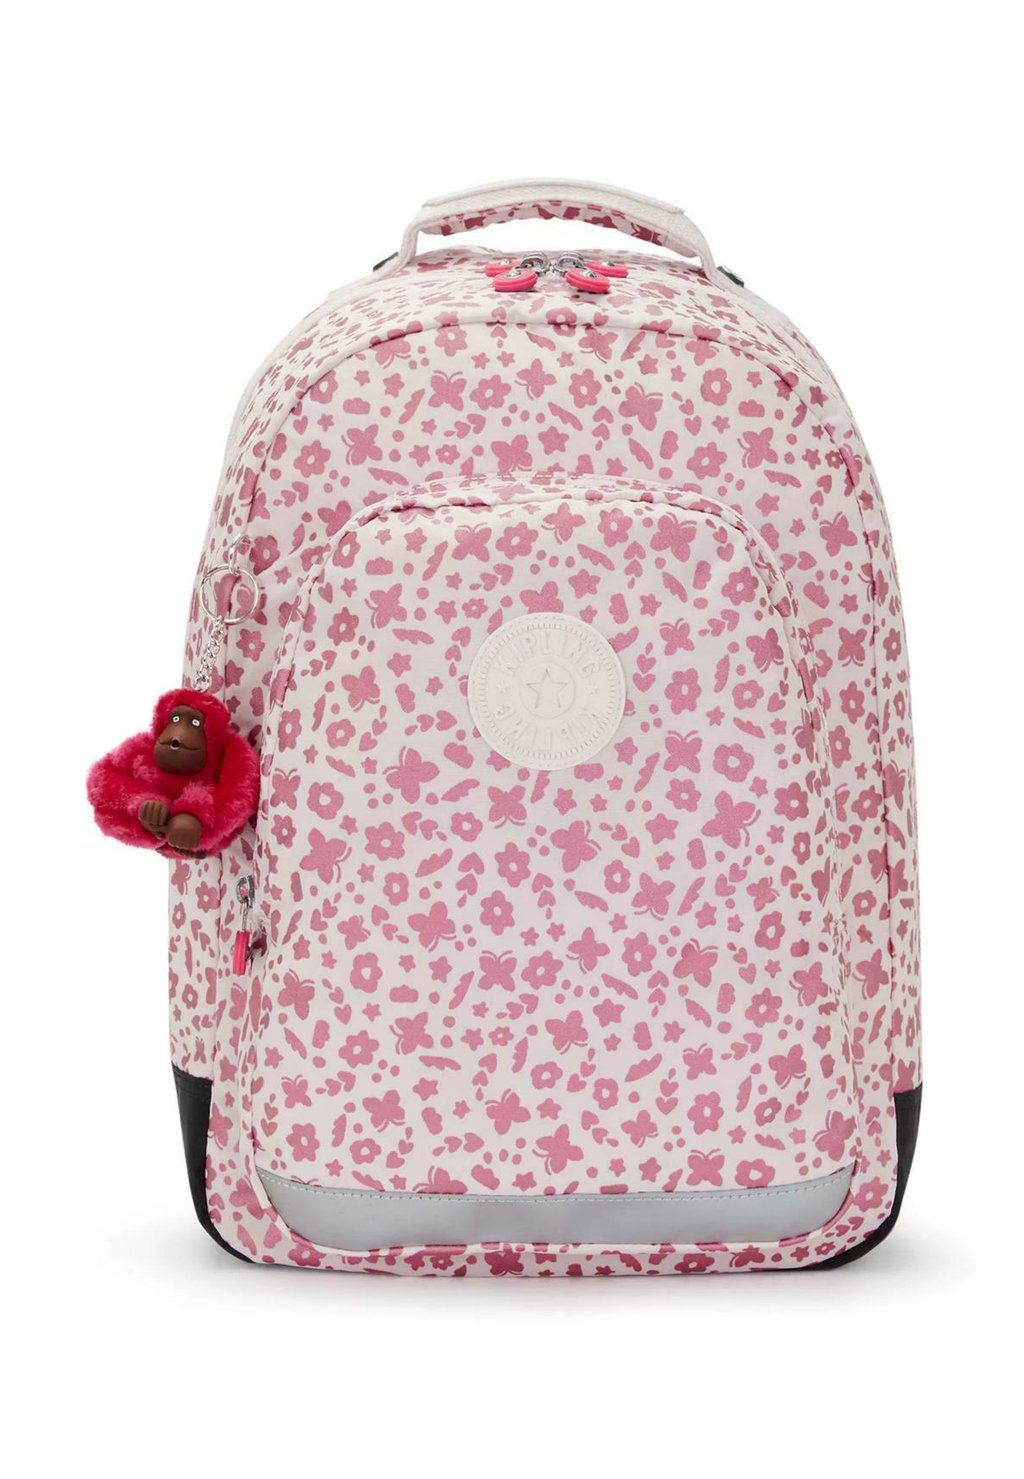 Рюкзак Class Room Kipling, цвет magic floral рюкзак class room kipling цвет magic floral